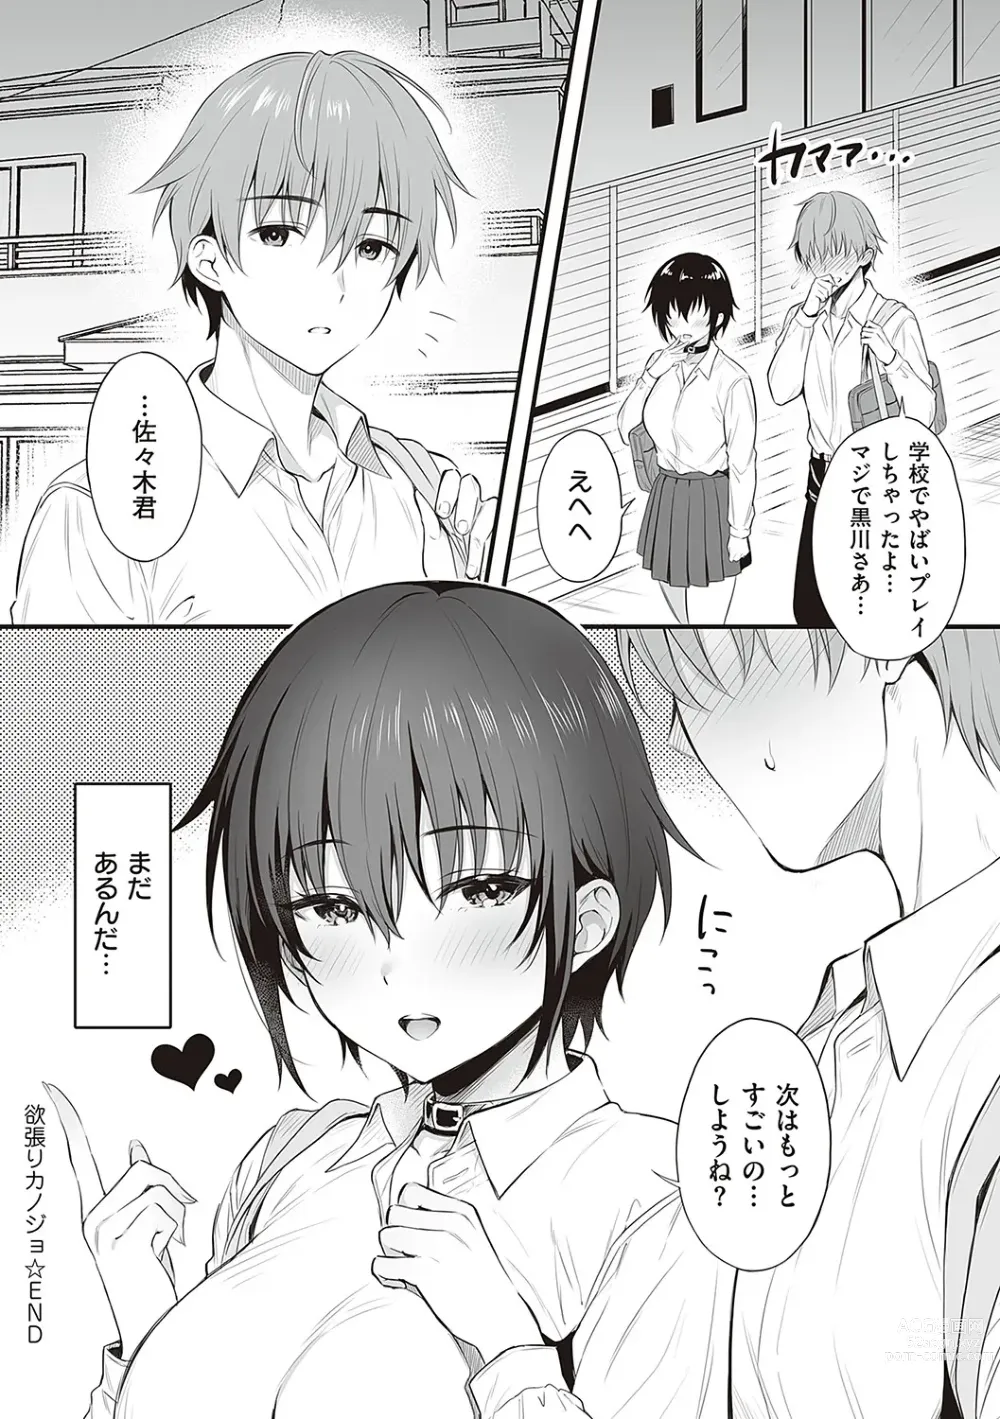 Page 231 of manga Shoujo Drop